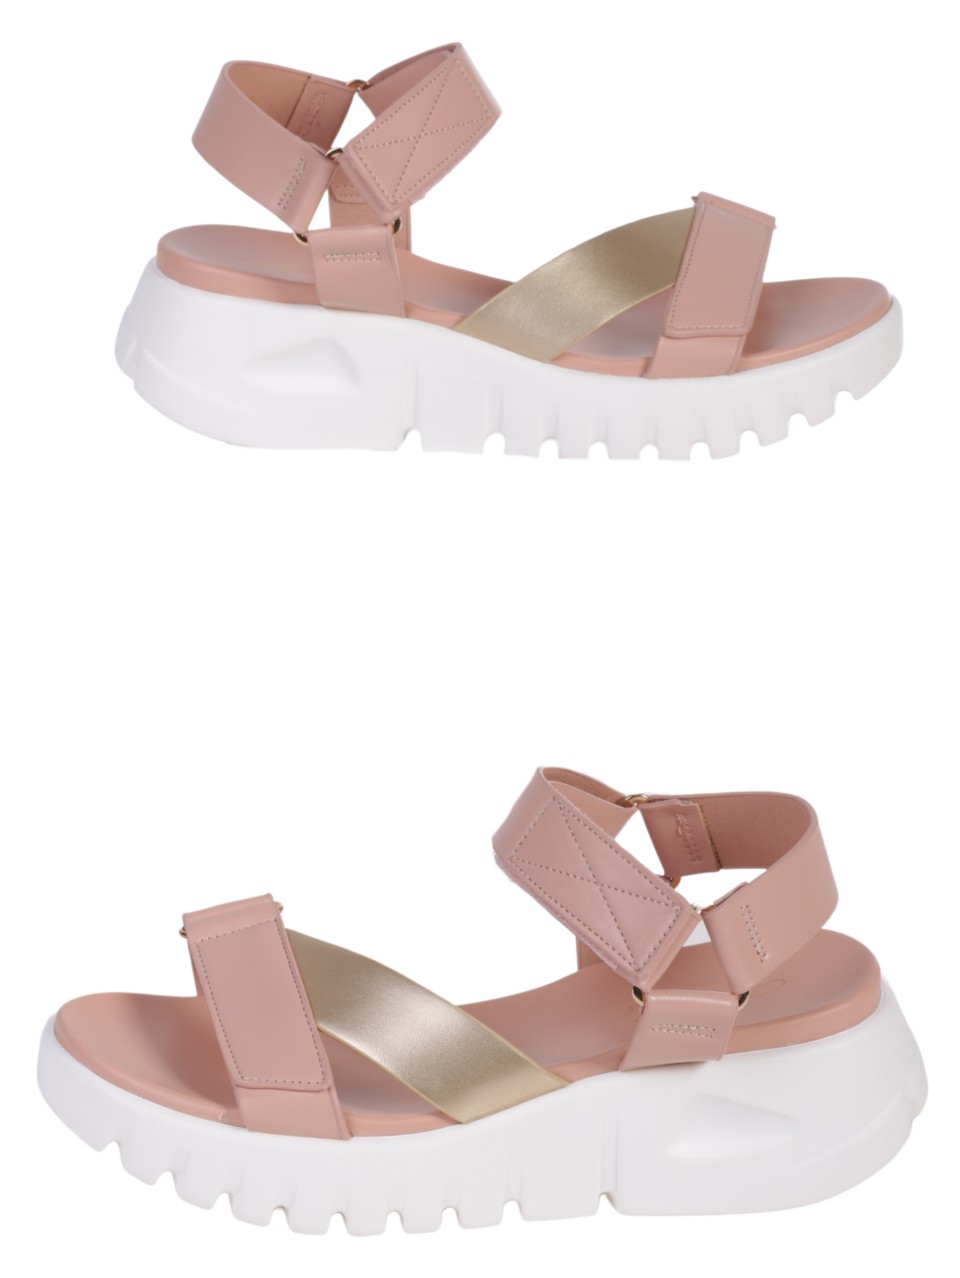 Ежедневни дамски сандали на платформа в розов/златист цвят 4H-24324 pink/gold